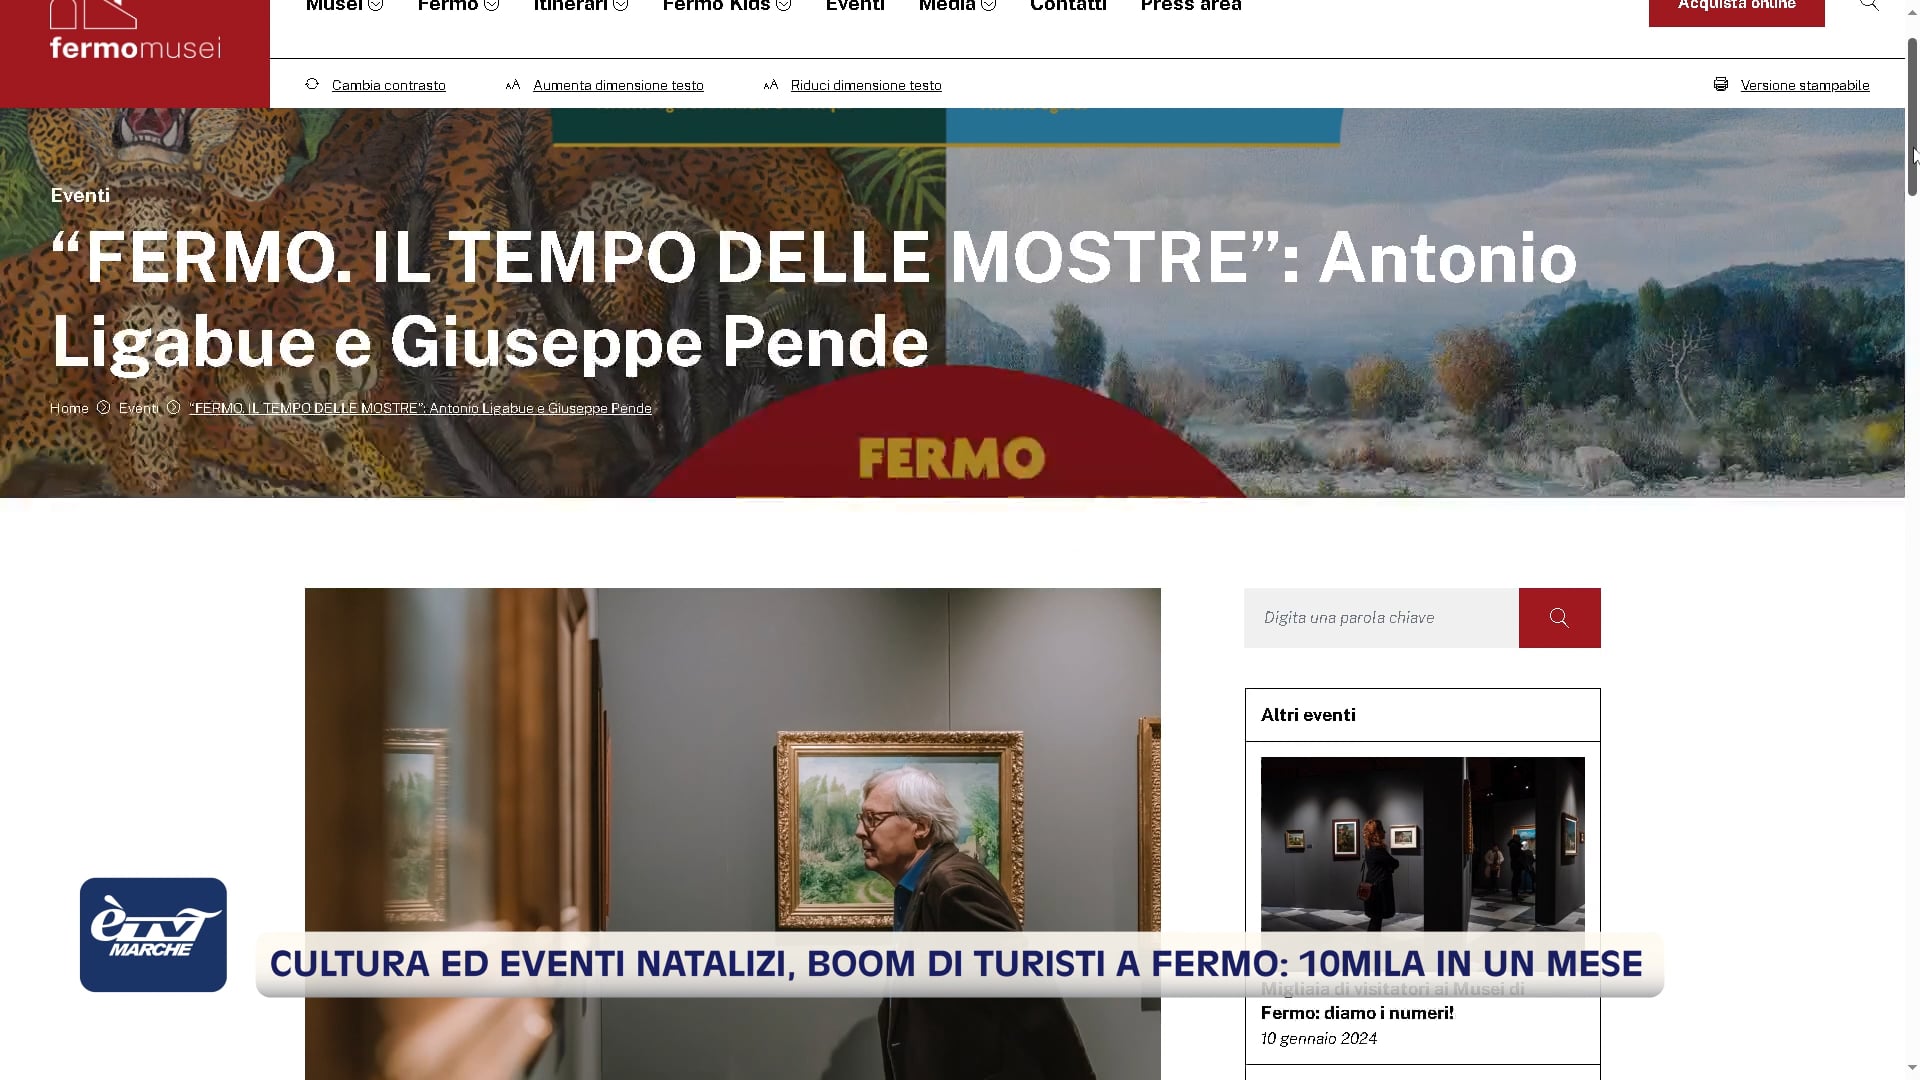 Cultura ed eventi natalizi, boom di turisti a Fermo, 10mila in un mese - VIDEO